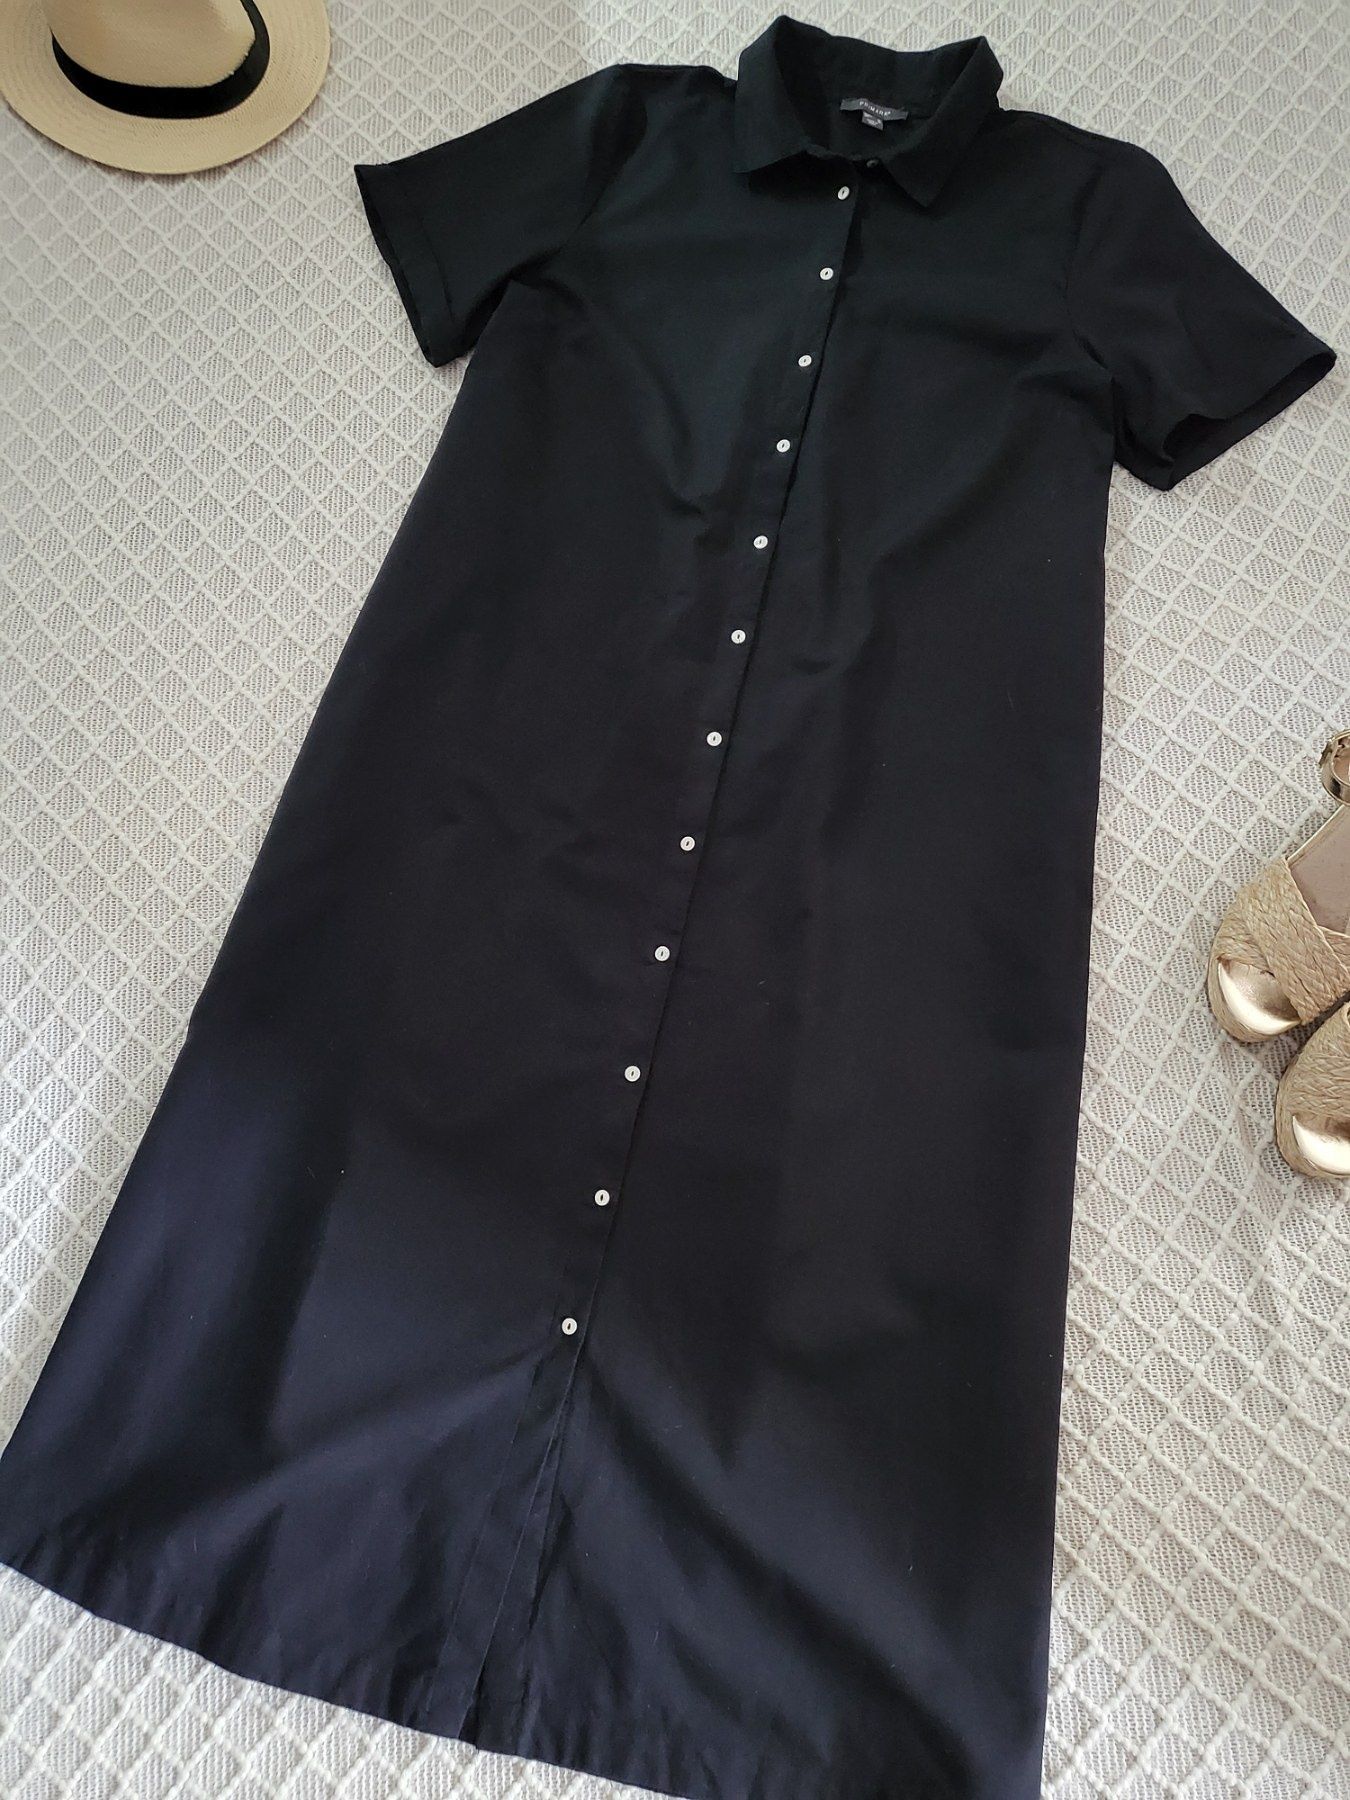 Чёрное платье рубашка миди Primark коттон лён